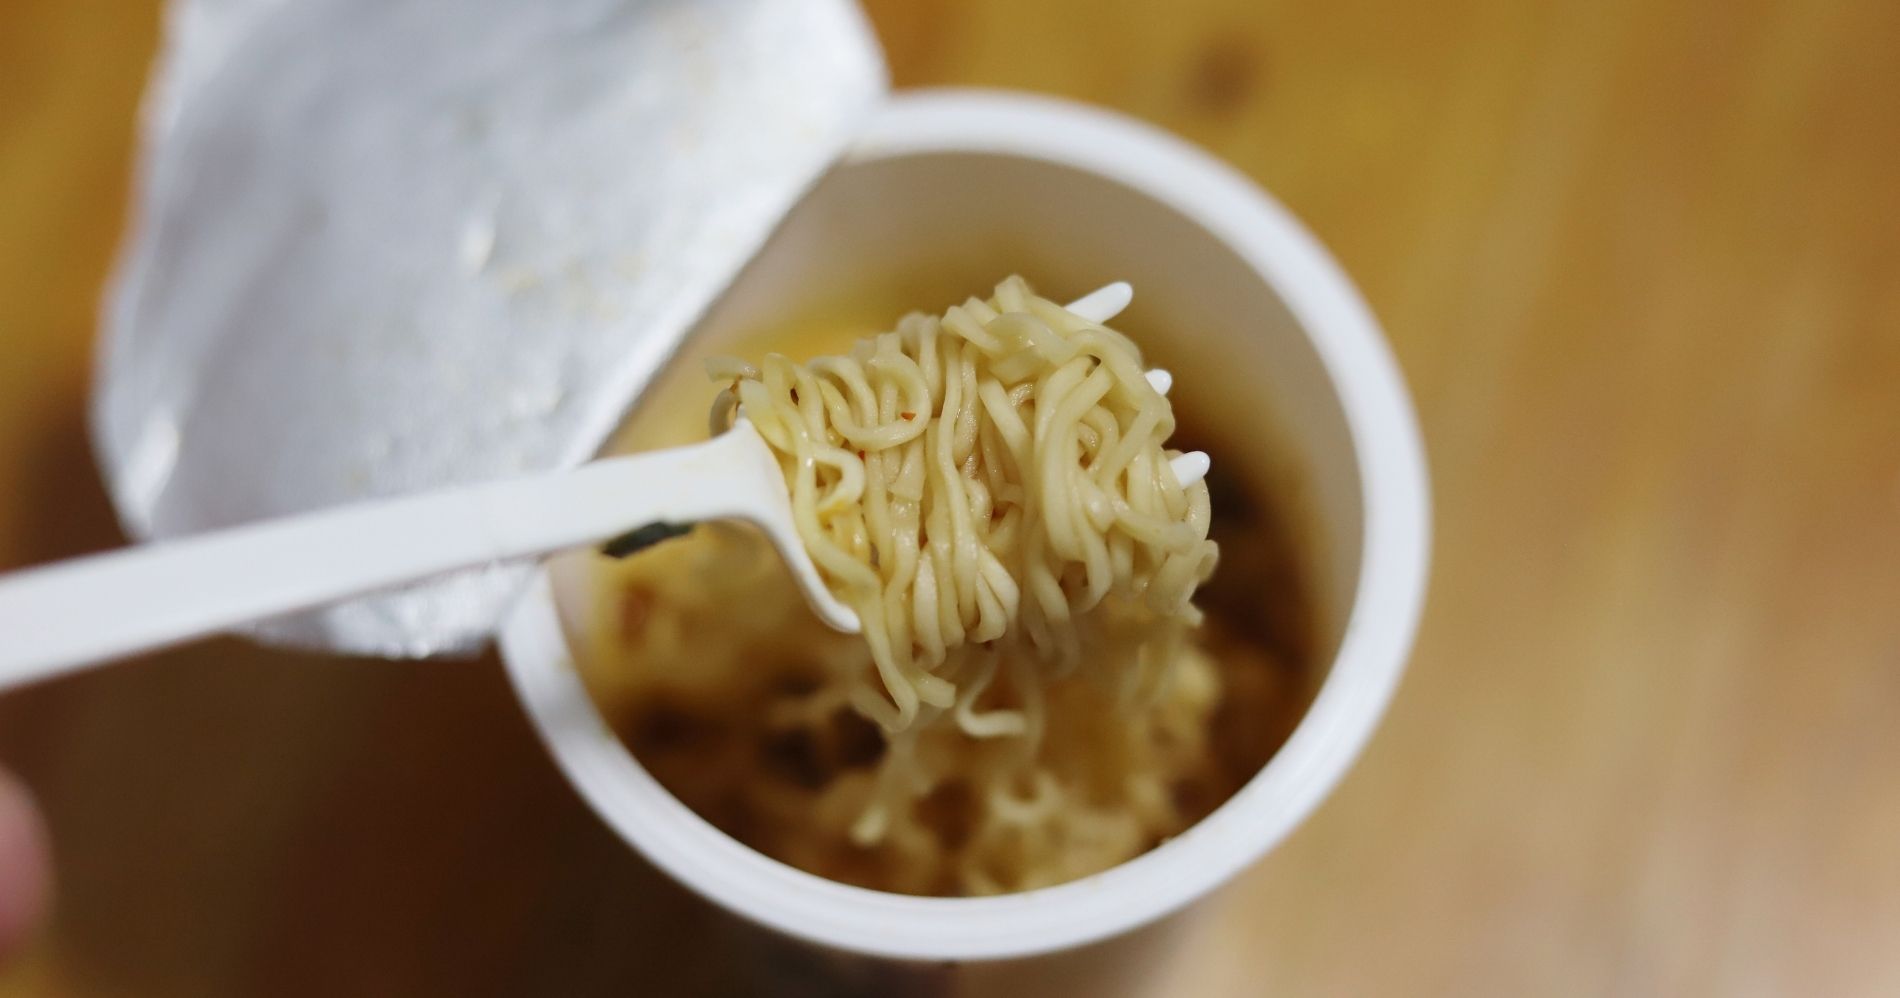 Instan Noodle - Canva